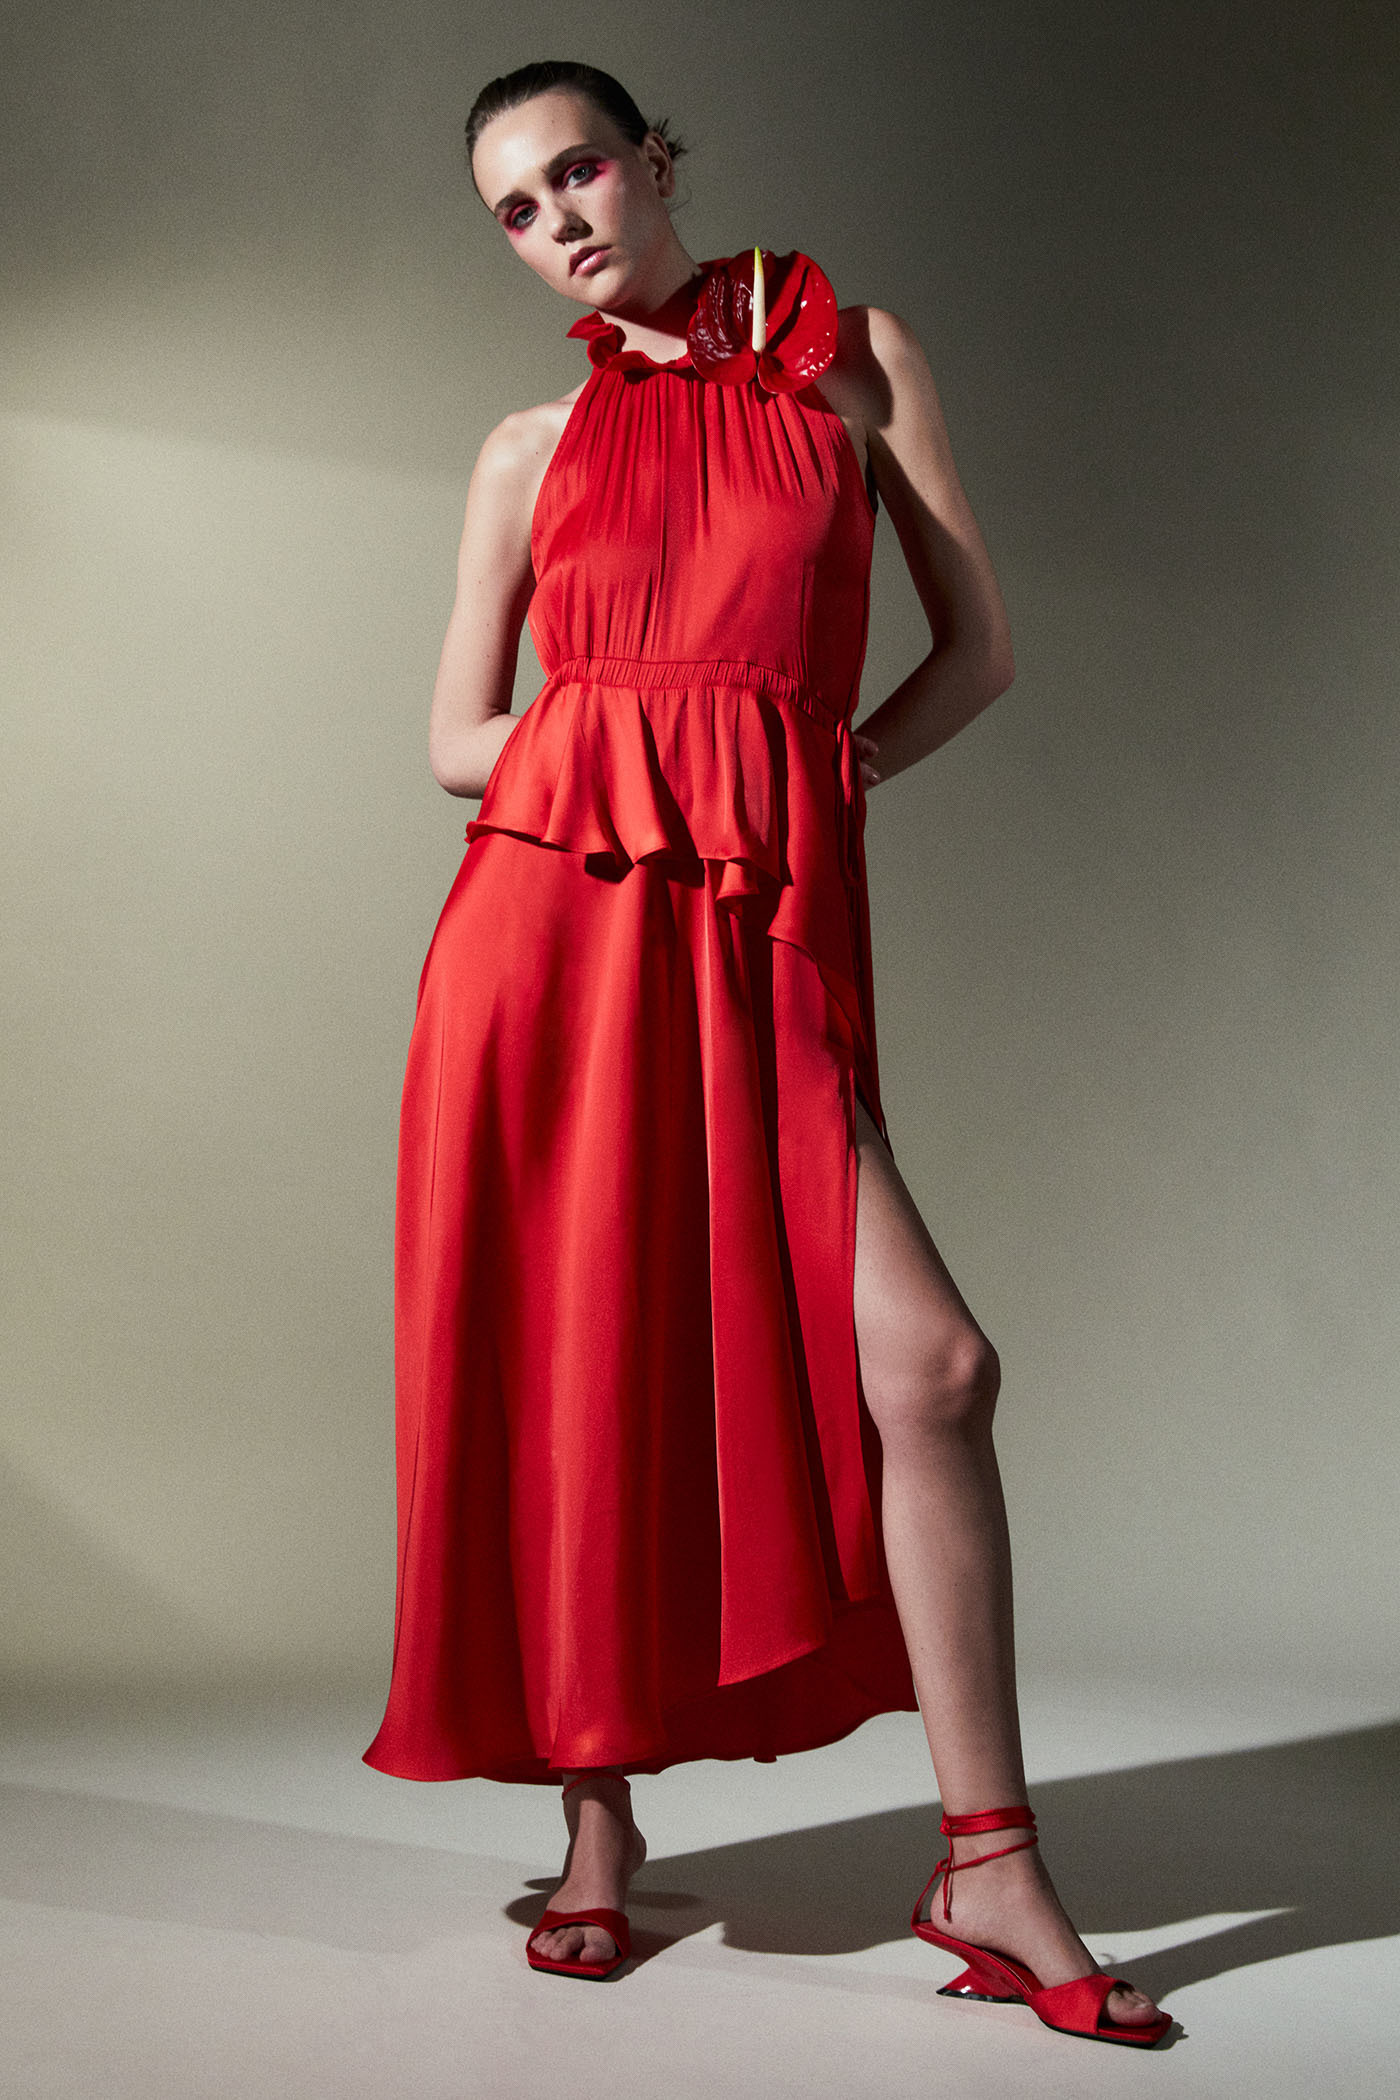 ALT: As es el vestido rojo de Sfera del que todo el mundo habla, perfecto para una boda